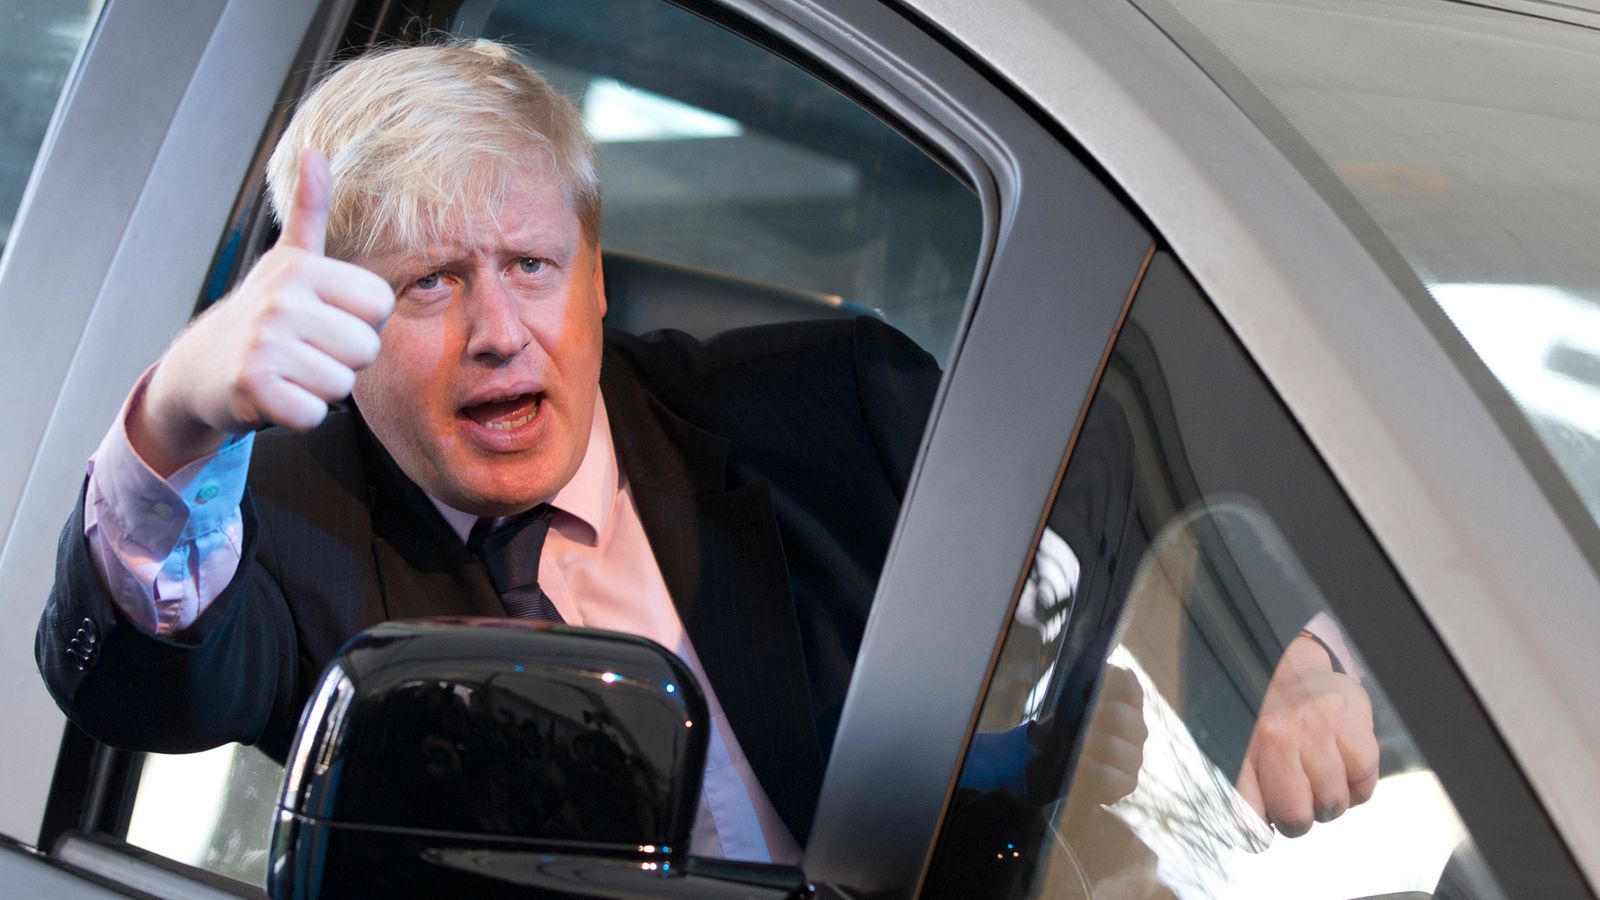 Cara mengemudi Boris Johnson yang buruk telah membuat penumpang Tory menjadi sangat marah |  Berita Politik